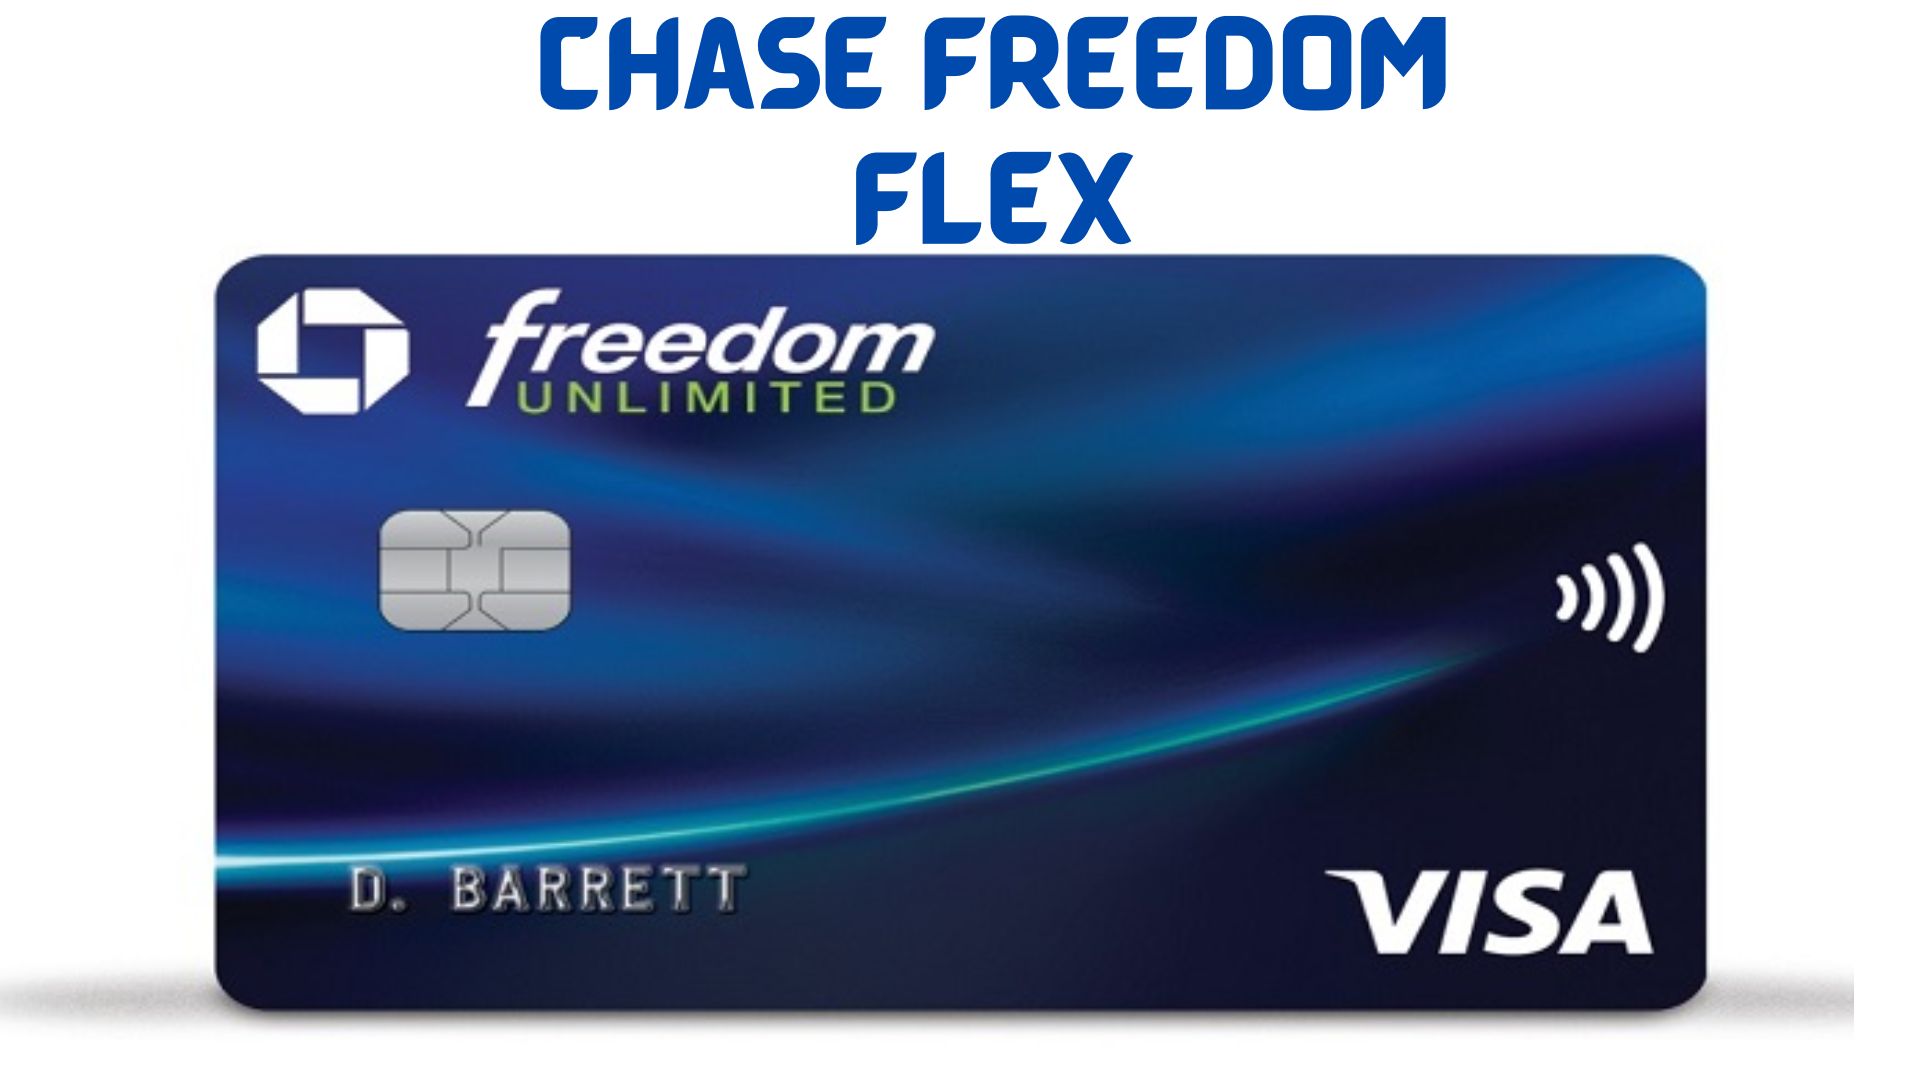 Chase Freedom Flex